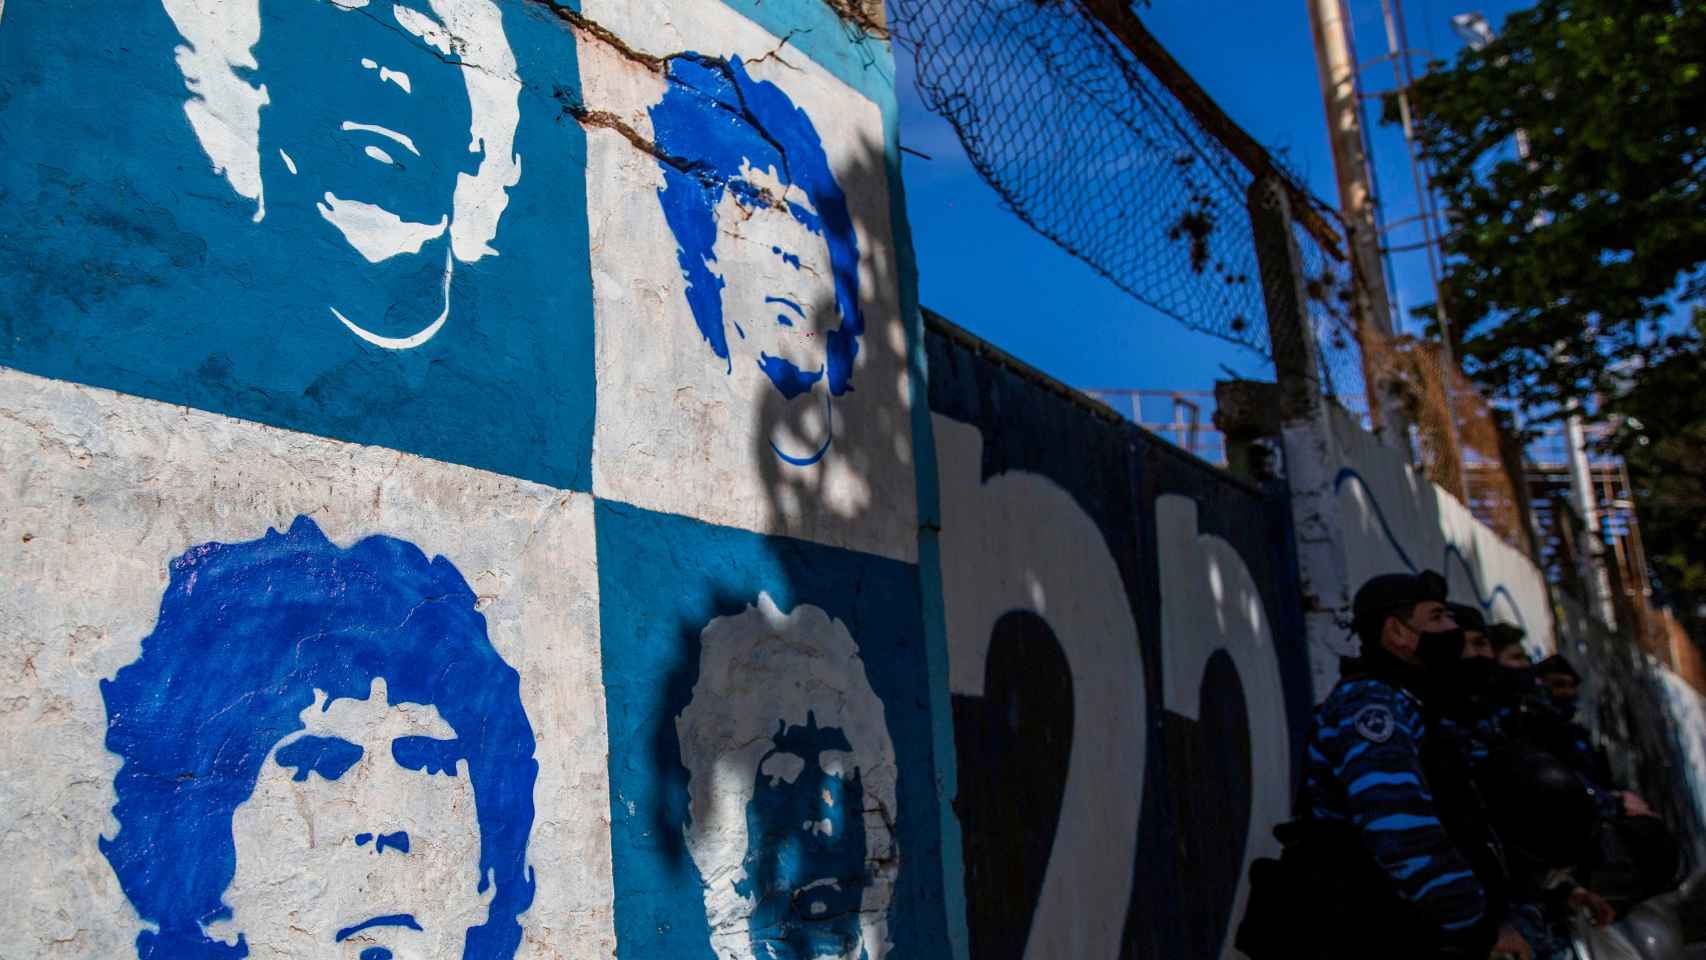 Homenaje de los aficionados a Maradona en Argentina por su 60 cumpleaños